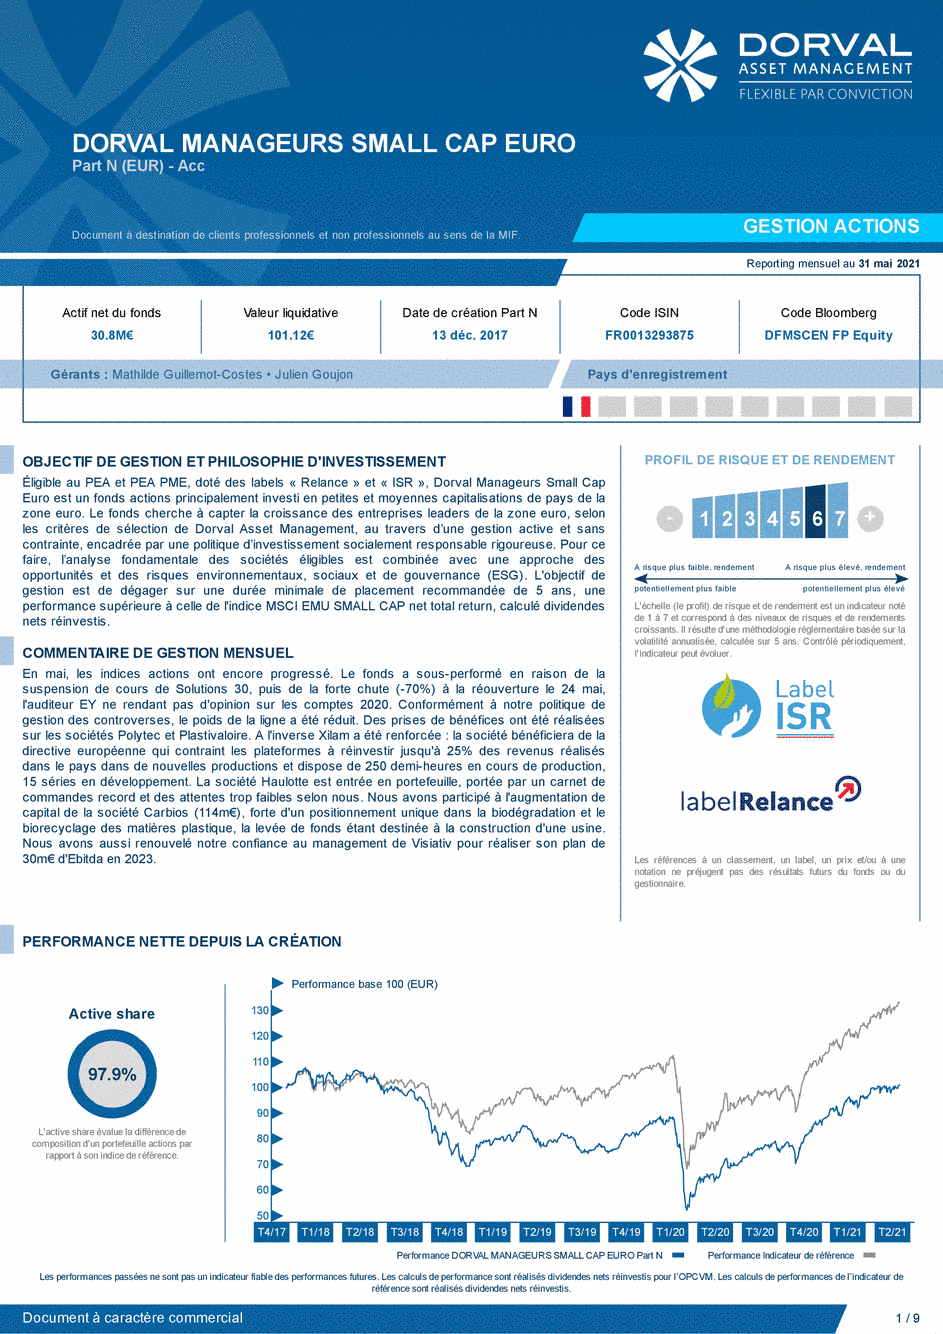 Reporting DORVAL MANAGEURS SMALL CAP EURO N - 31/05/2021 - Français